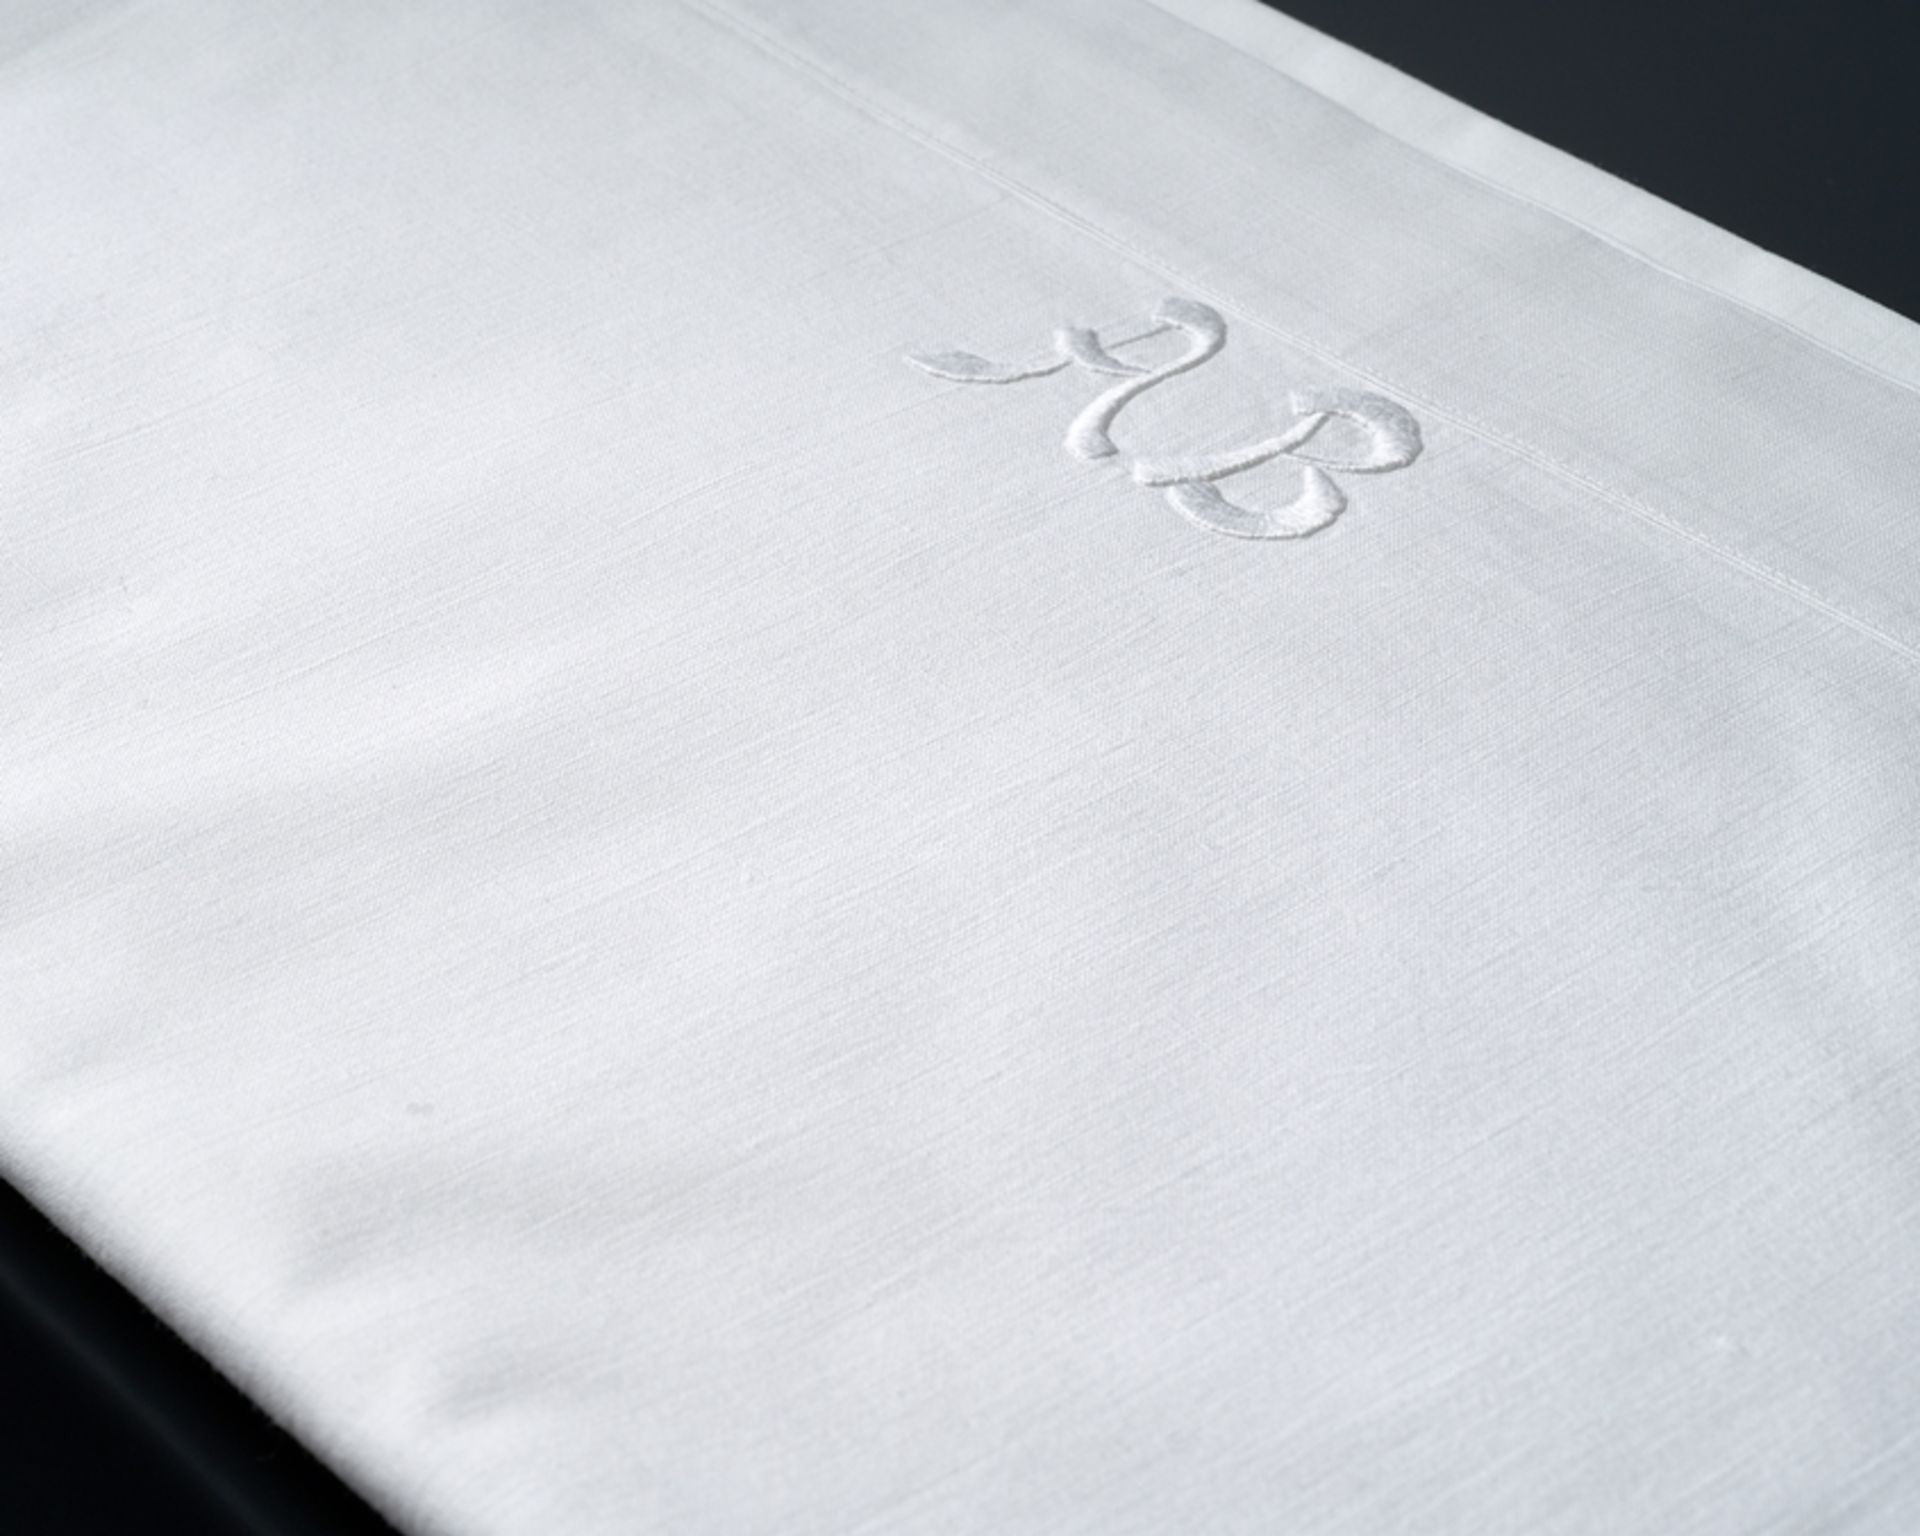 Großes glattes Tuch mit Monogramm A B. Feine glatte Baumwolle. An einem Schmalrand zwei große relie